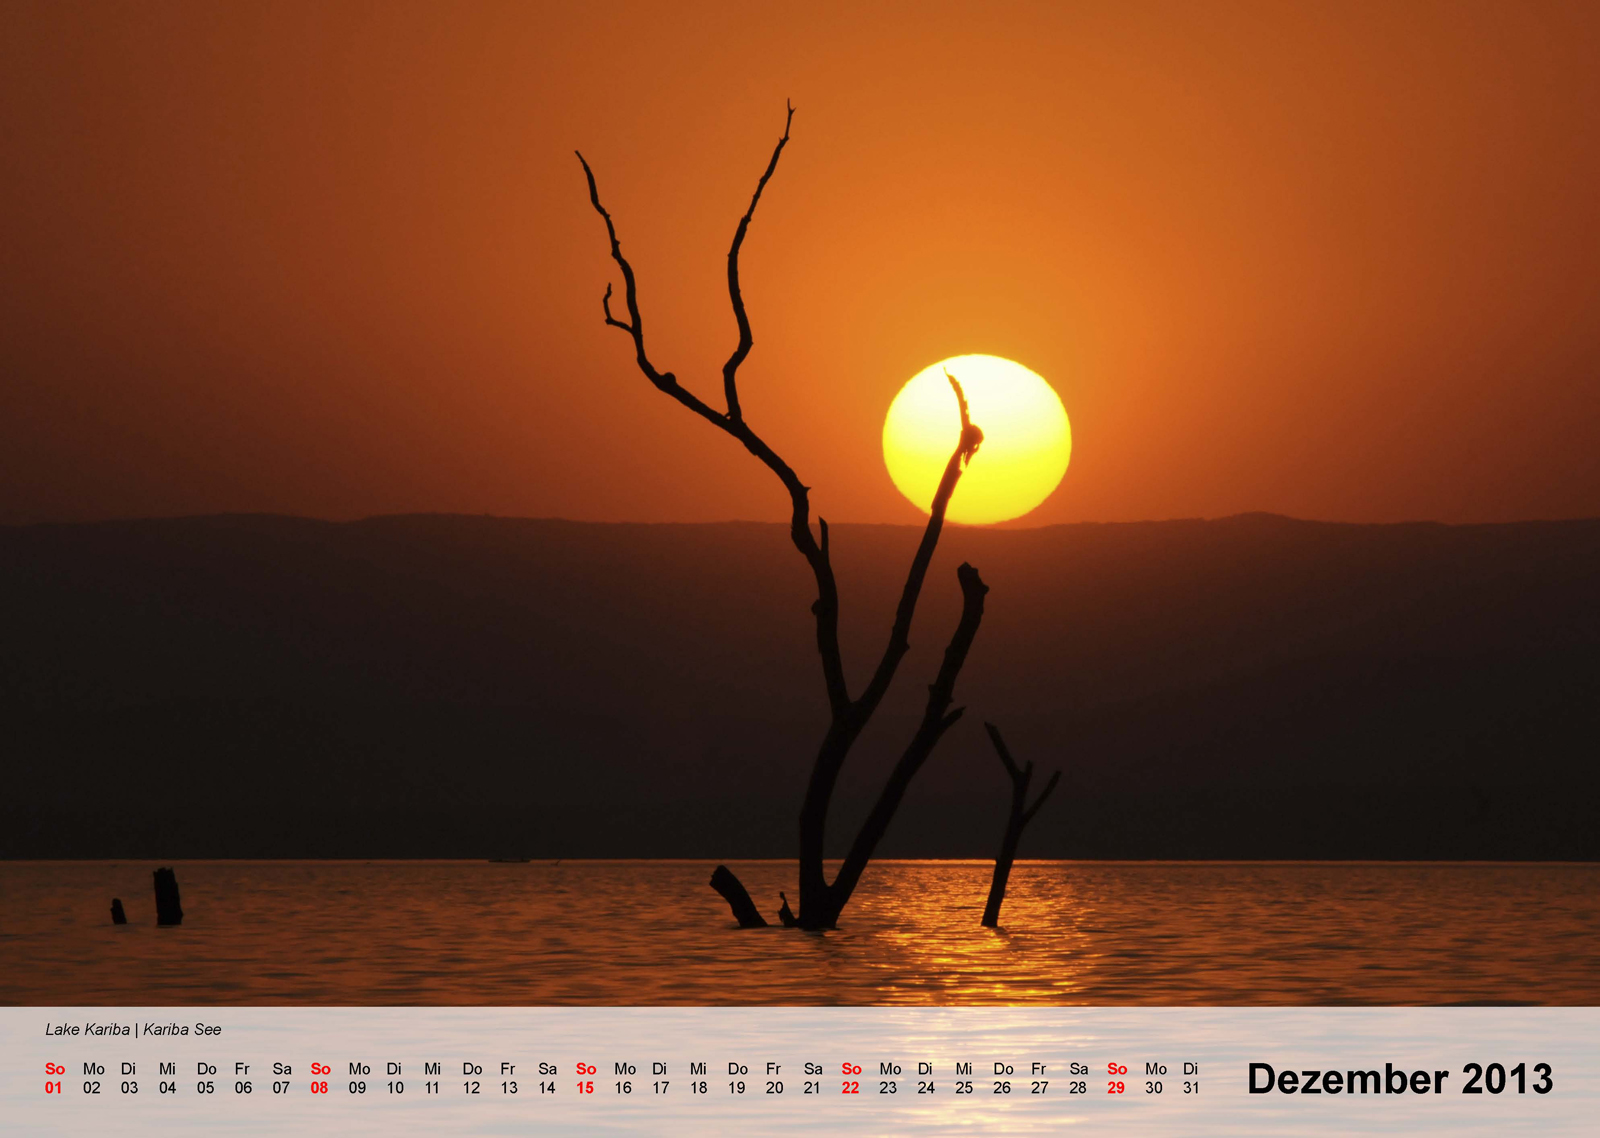 Lake Kariba | Kariba Stausee - Kalender 2013 - Dezember